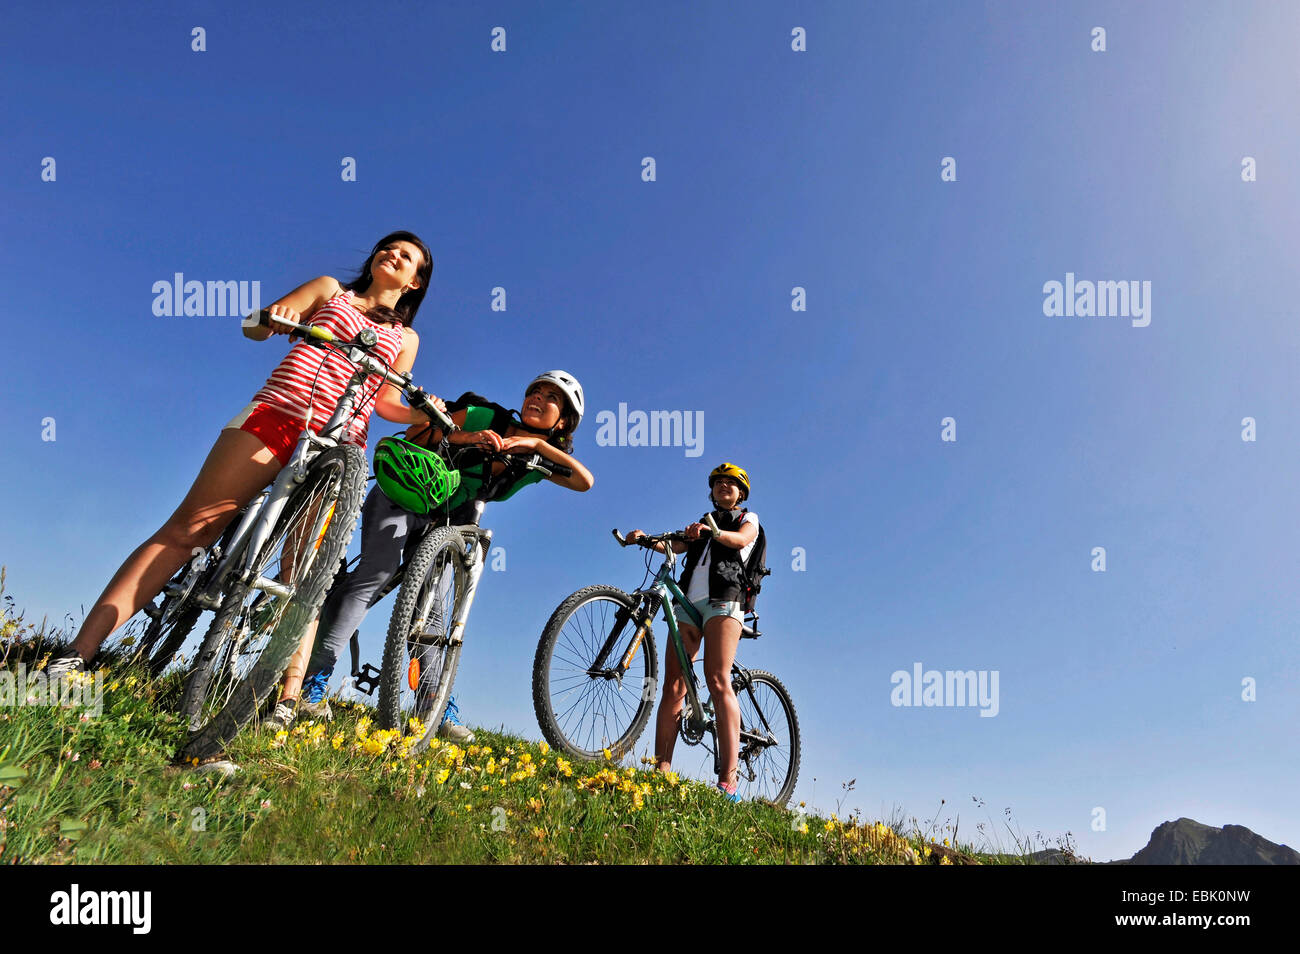 Trois adolescents avec des mountain-bikes standing in mountain meadow, France, Savoie Banque D'Images